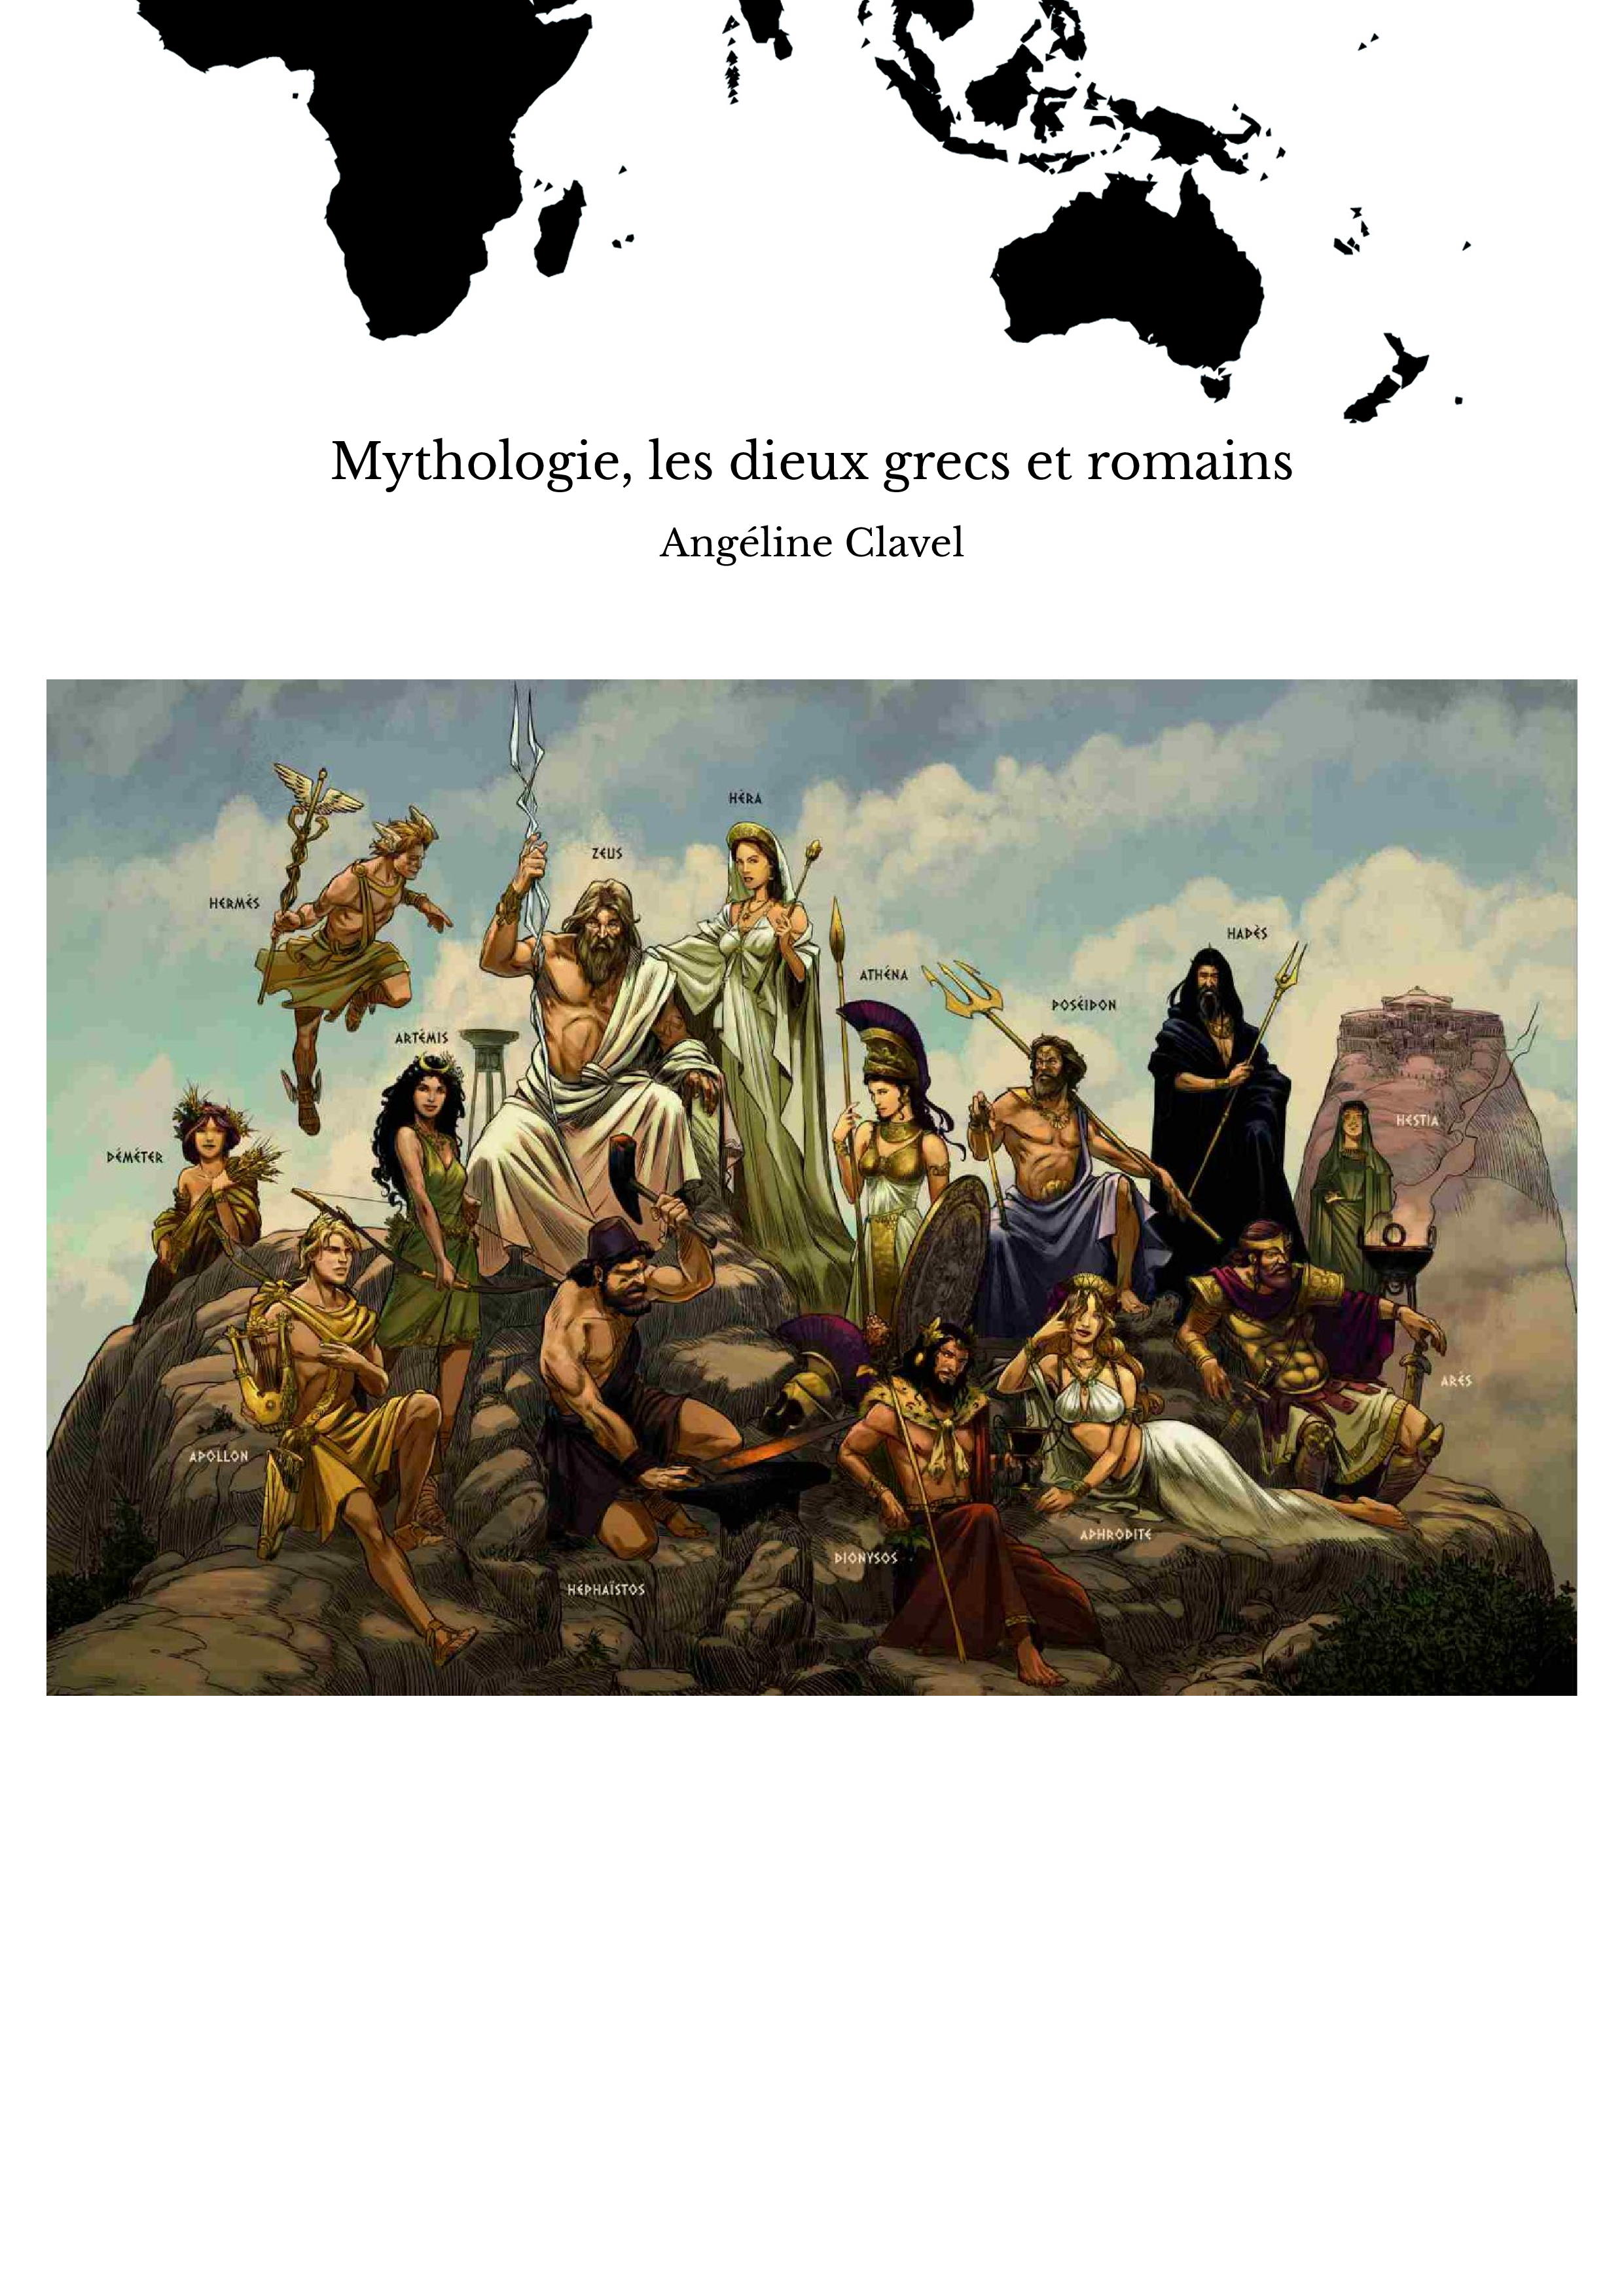 Mythologie, les dieux grecs et romains